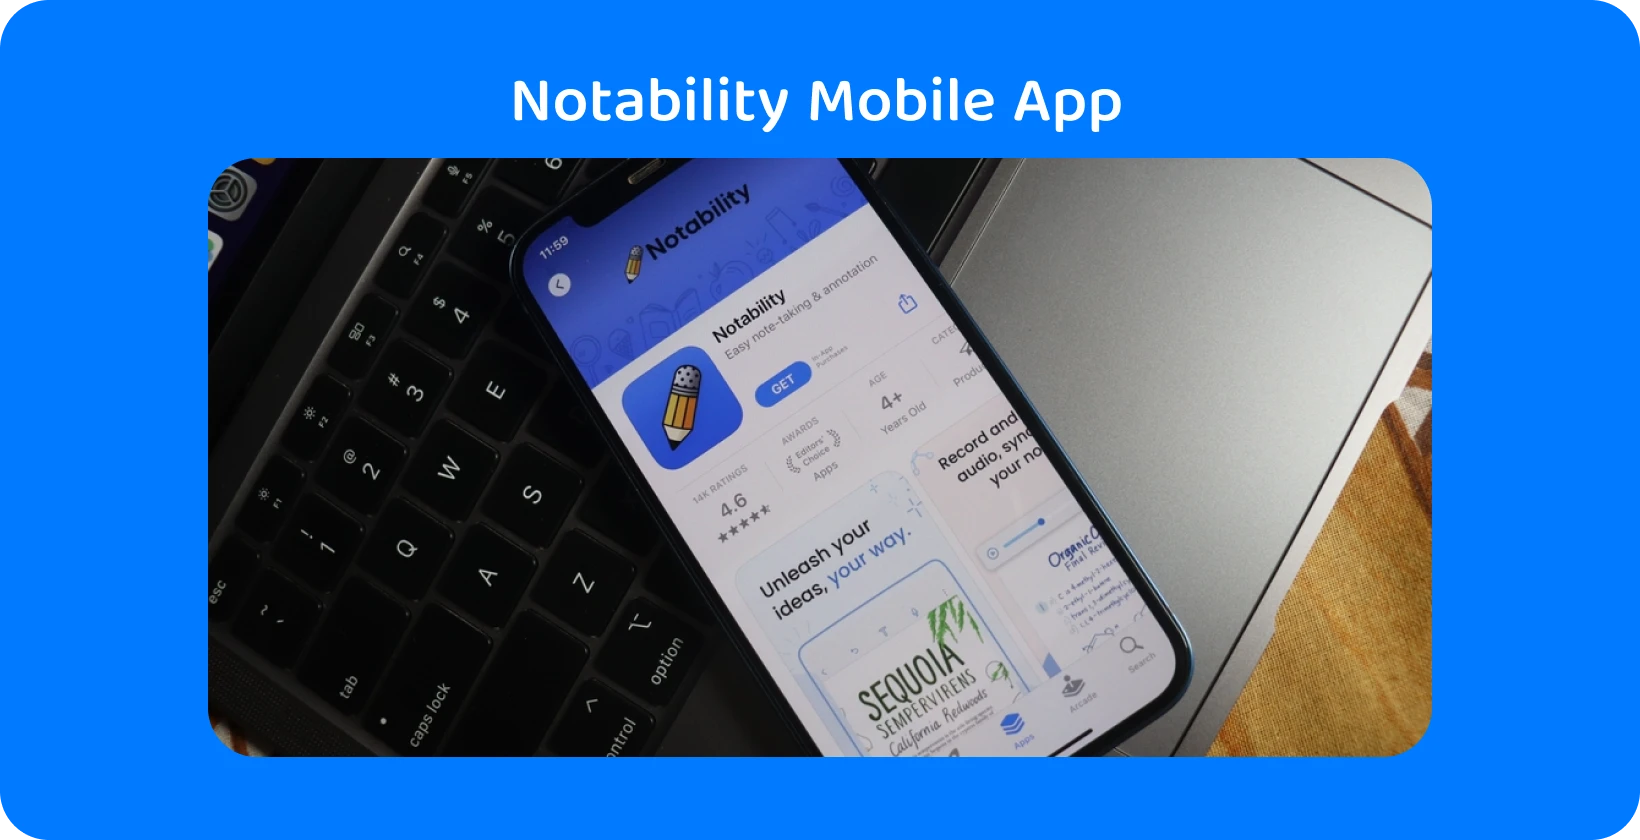 แอป Notability บนหน้าจอสมาร์ทโฟนพร้อมคุณสมบัติการถอดความ ซึ่งแสดงความสามารถในการแปลงเสียงเป็นข้อความ